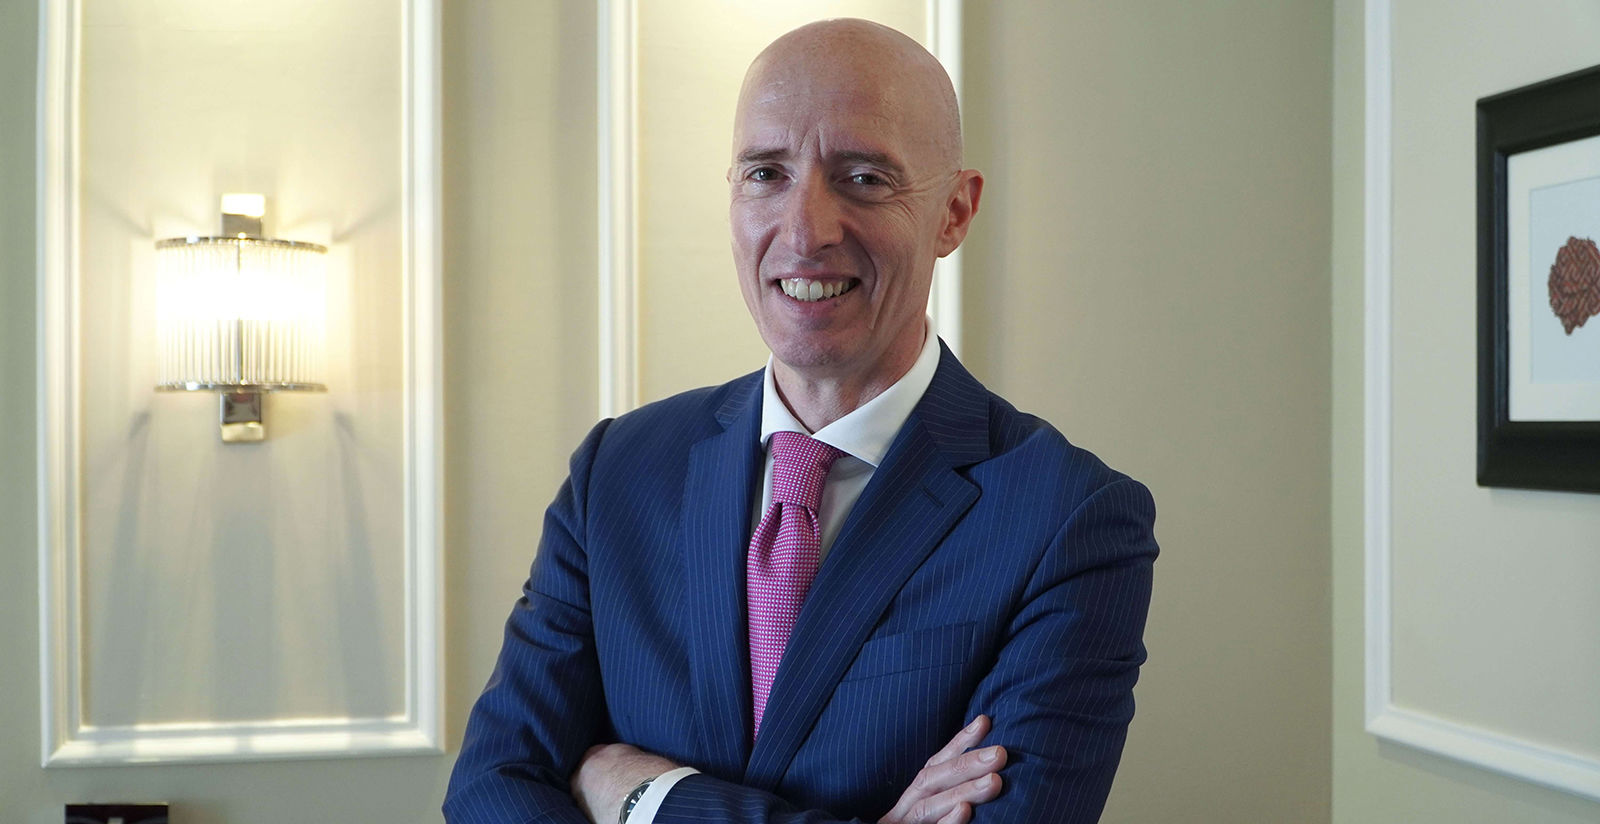 Intervista a Claudio Catani, Vice President Operations del gruppo FH55 Hotels  1